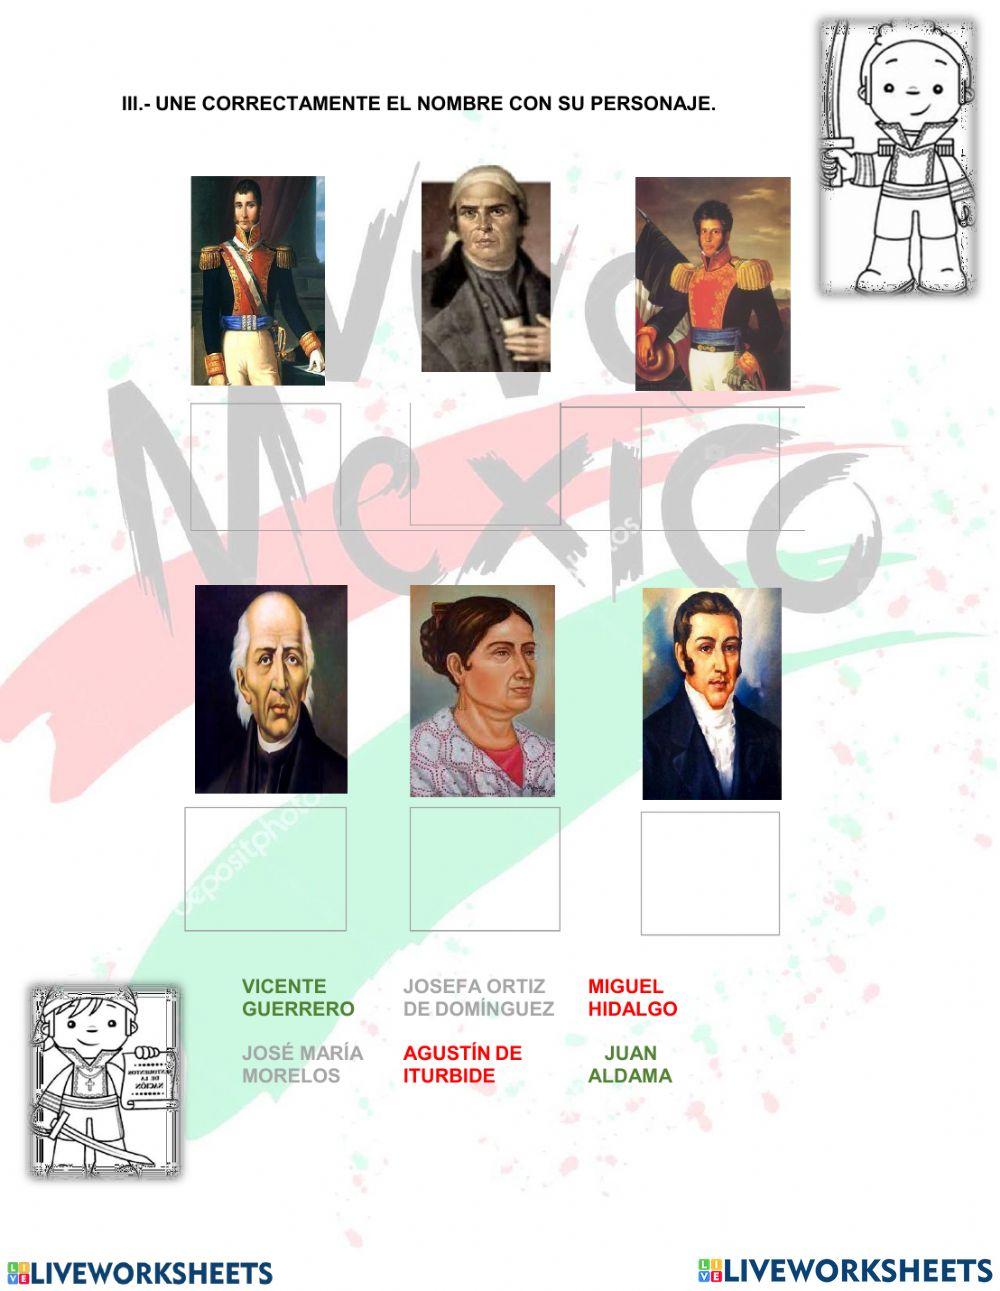 Aniversario del Bicentenario de la Consumación de la Independencia de México